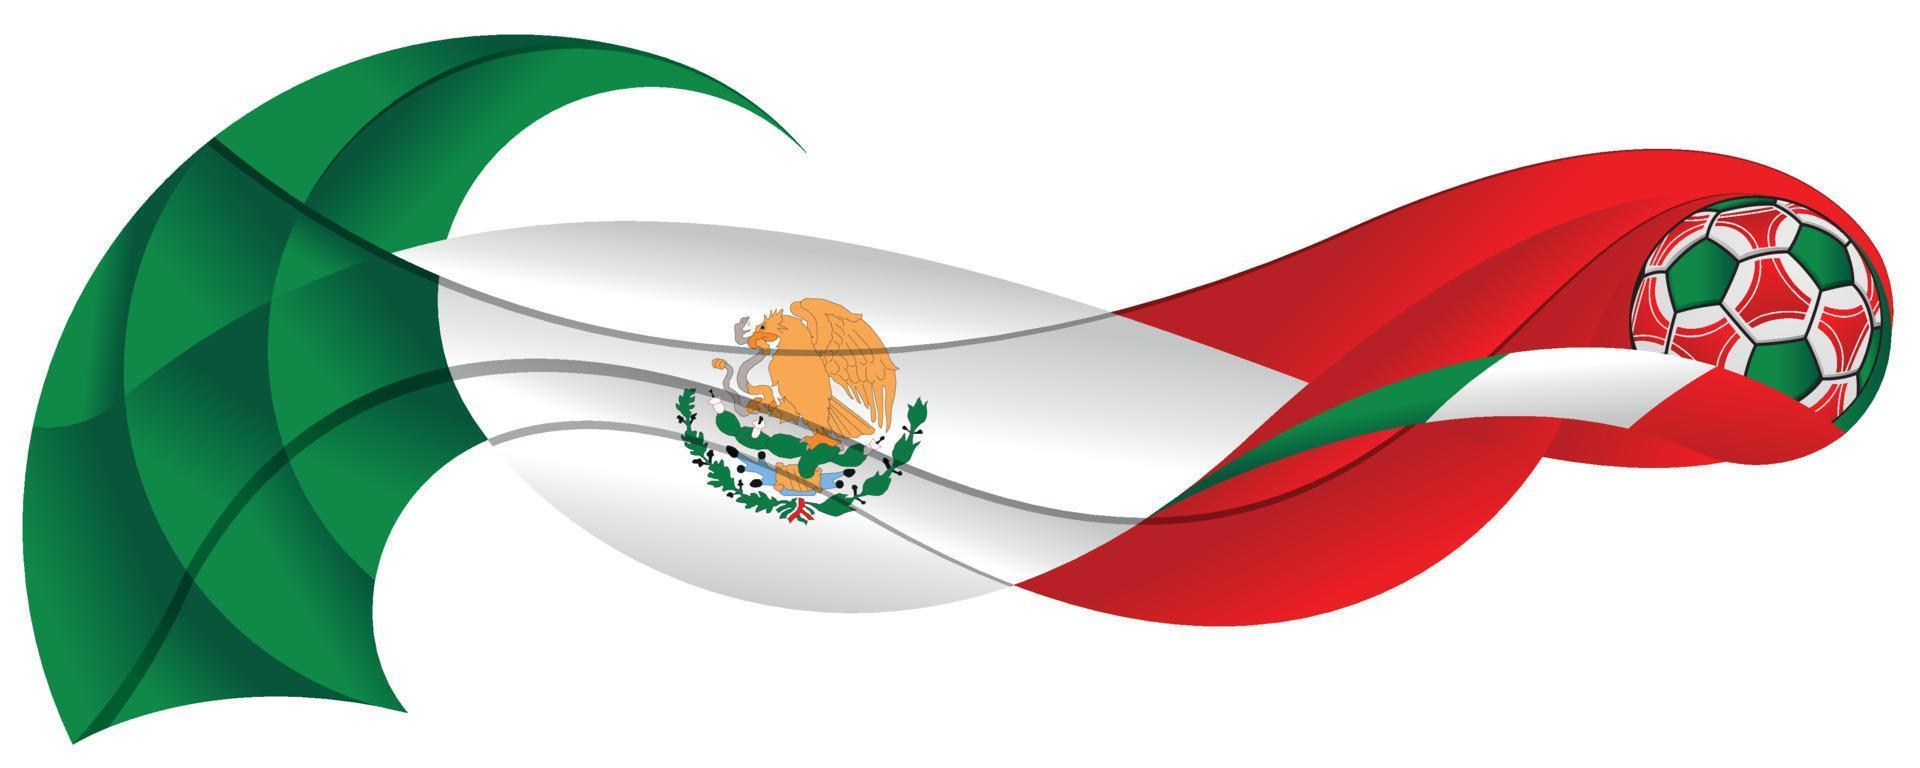 ballon de football vert blanc et rouge laissant une traînée abstraite sous la forme d'une ondulation aux couleurs du drapeau du mexique sur fond blanc vecteur